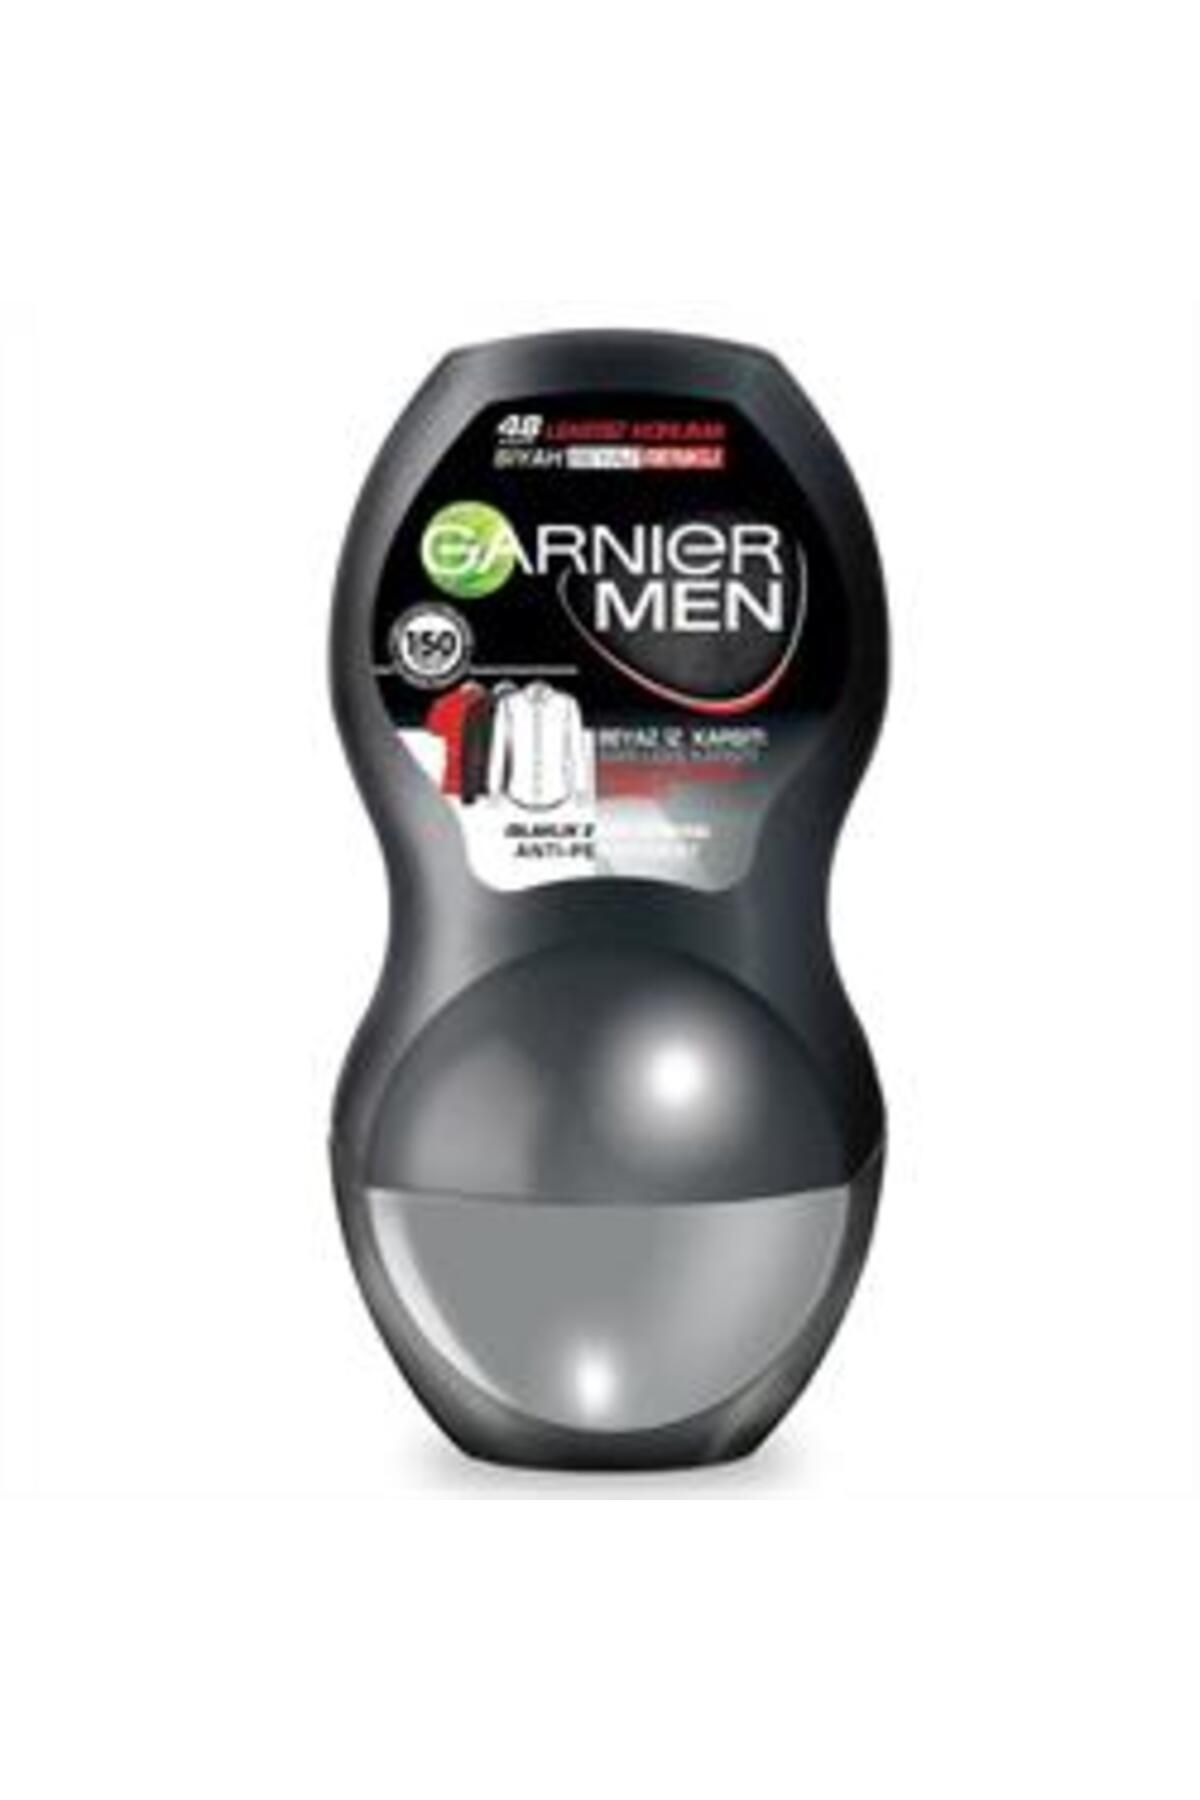 Garnier ( KİL MASKESİ HEDİYE ) Garnier Men Lekesiz Koruma Erkek Roll-On Deodorant 50ml ( 1 ADET )